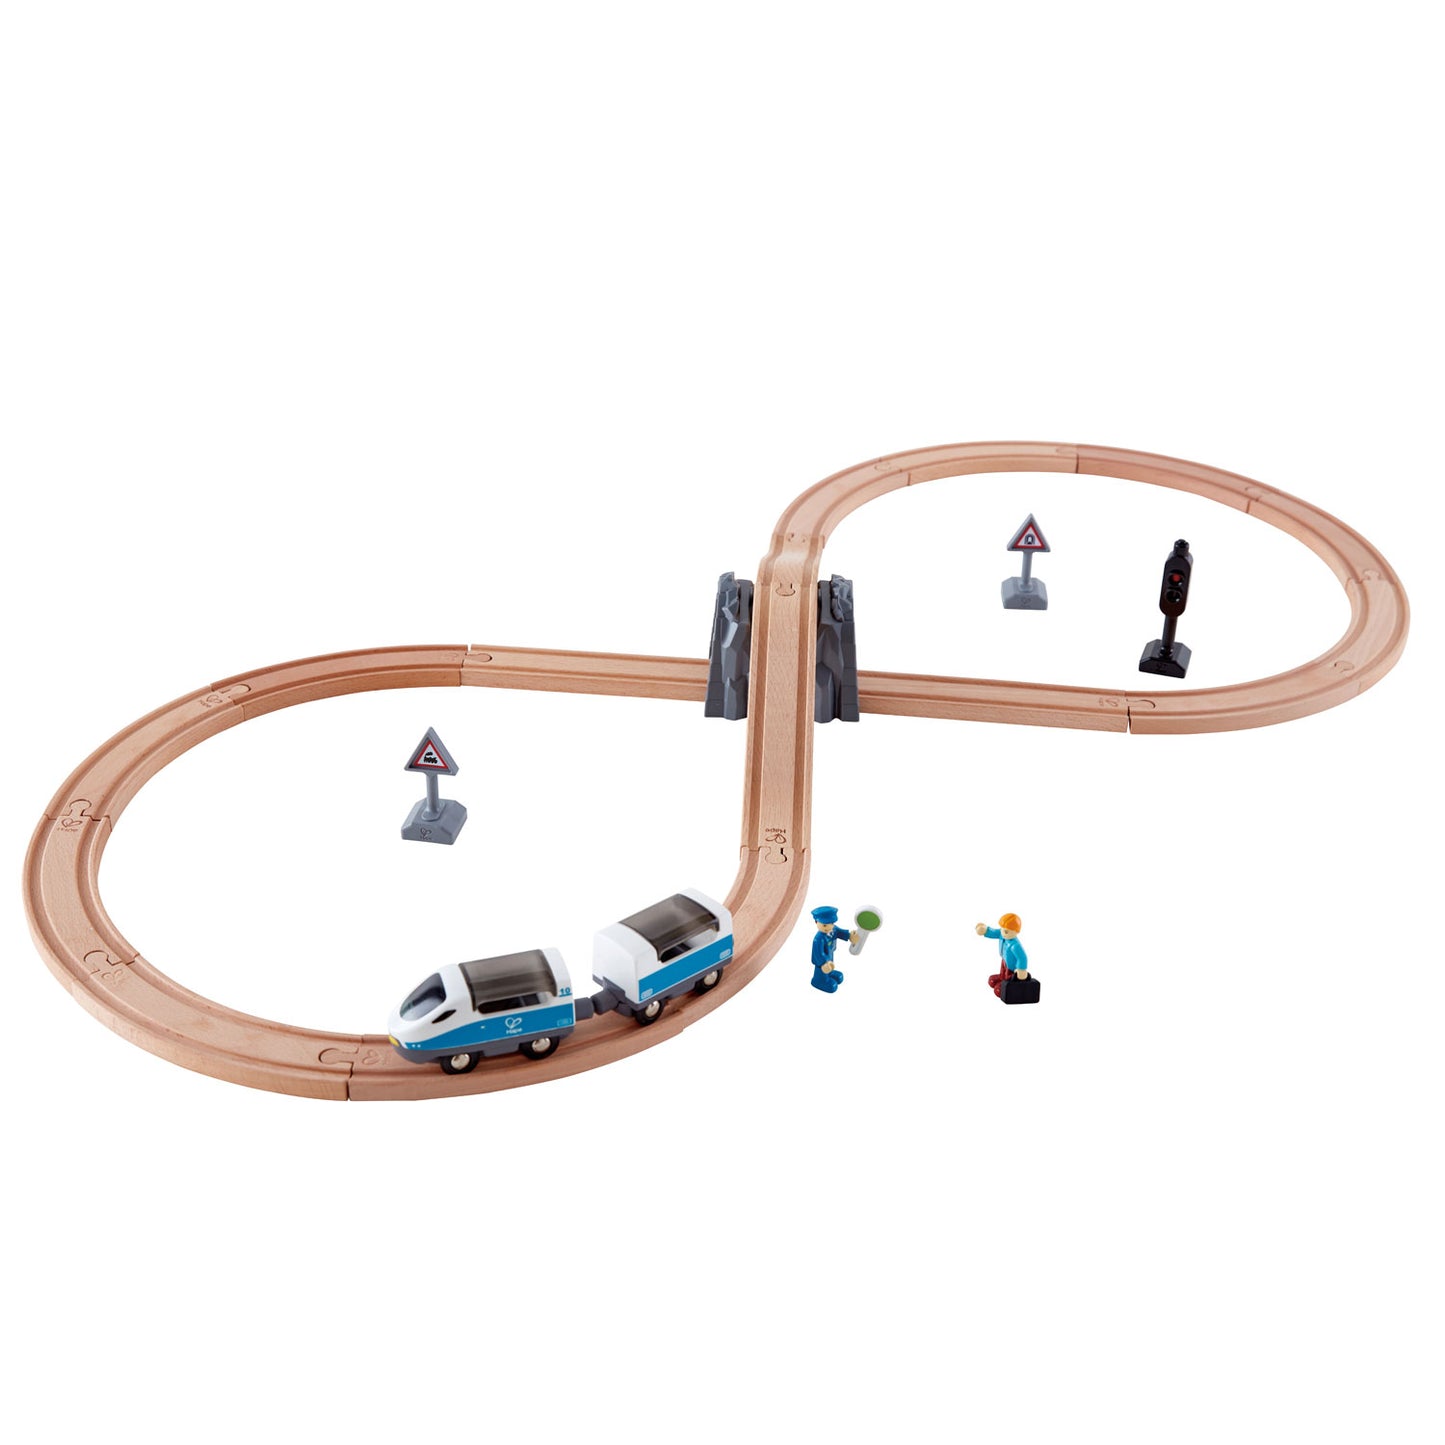 Hape Figure 8 Rail Kit - Educational Railway Adventure for Kids, Ages 3+